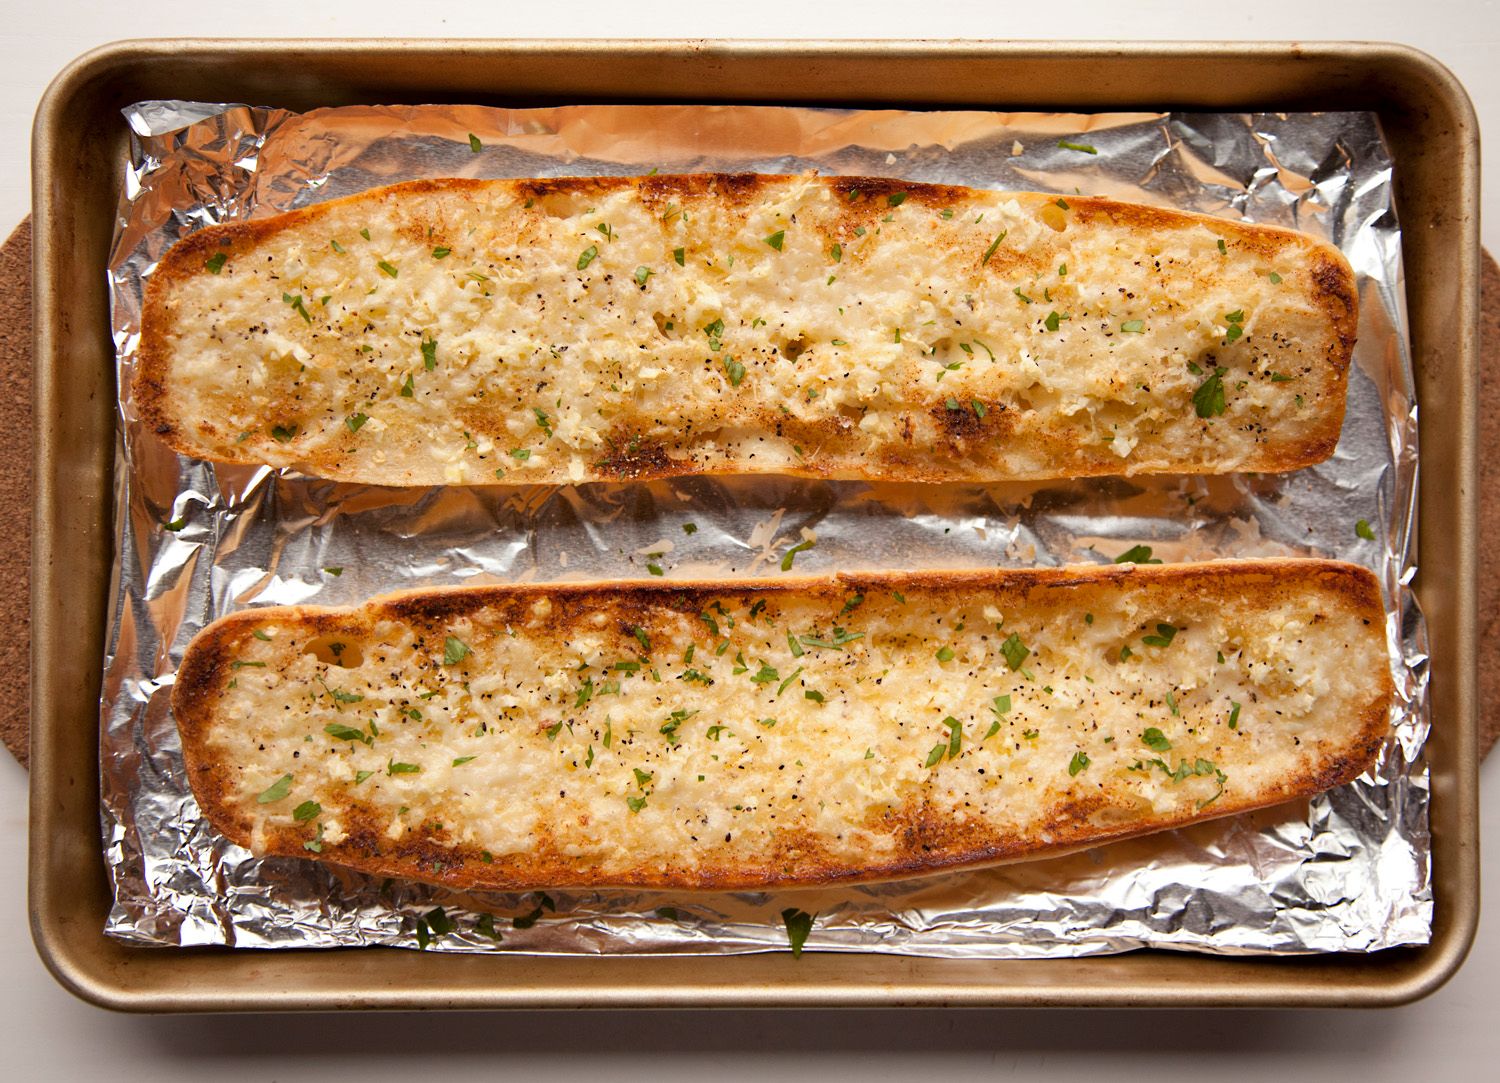 Homemade Cheesy Garlic Bread